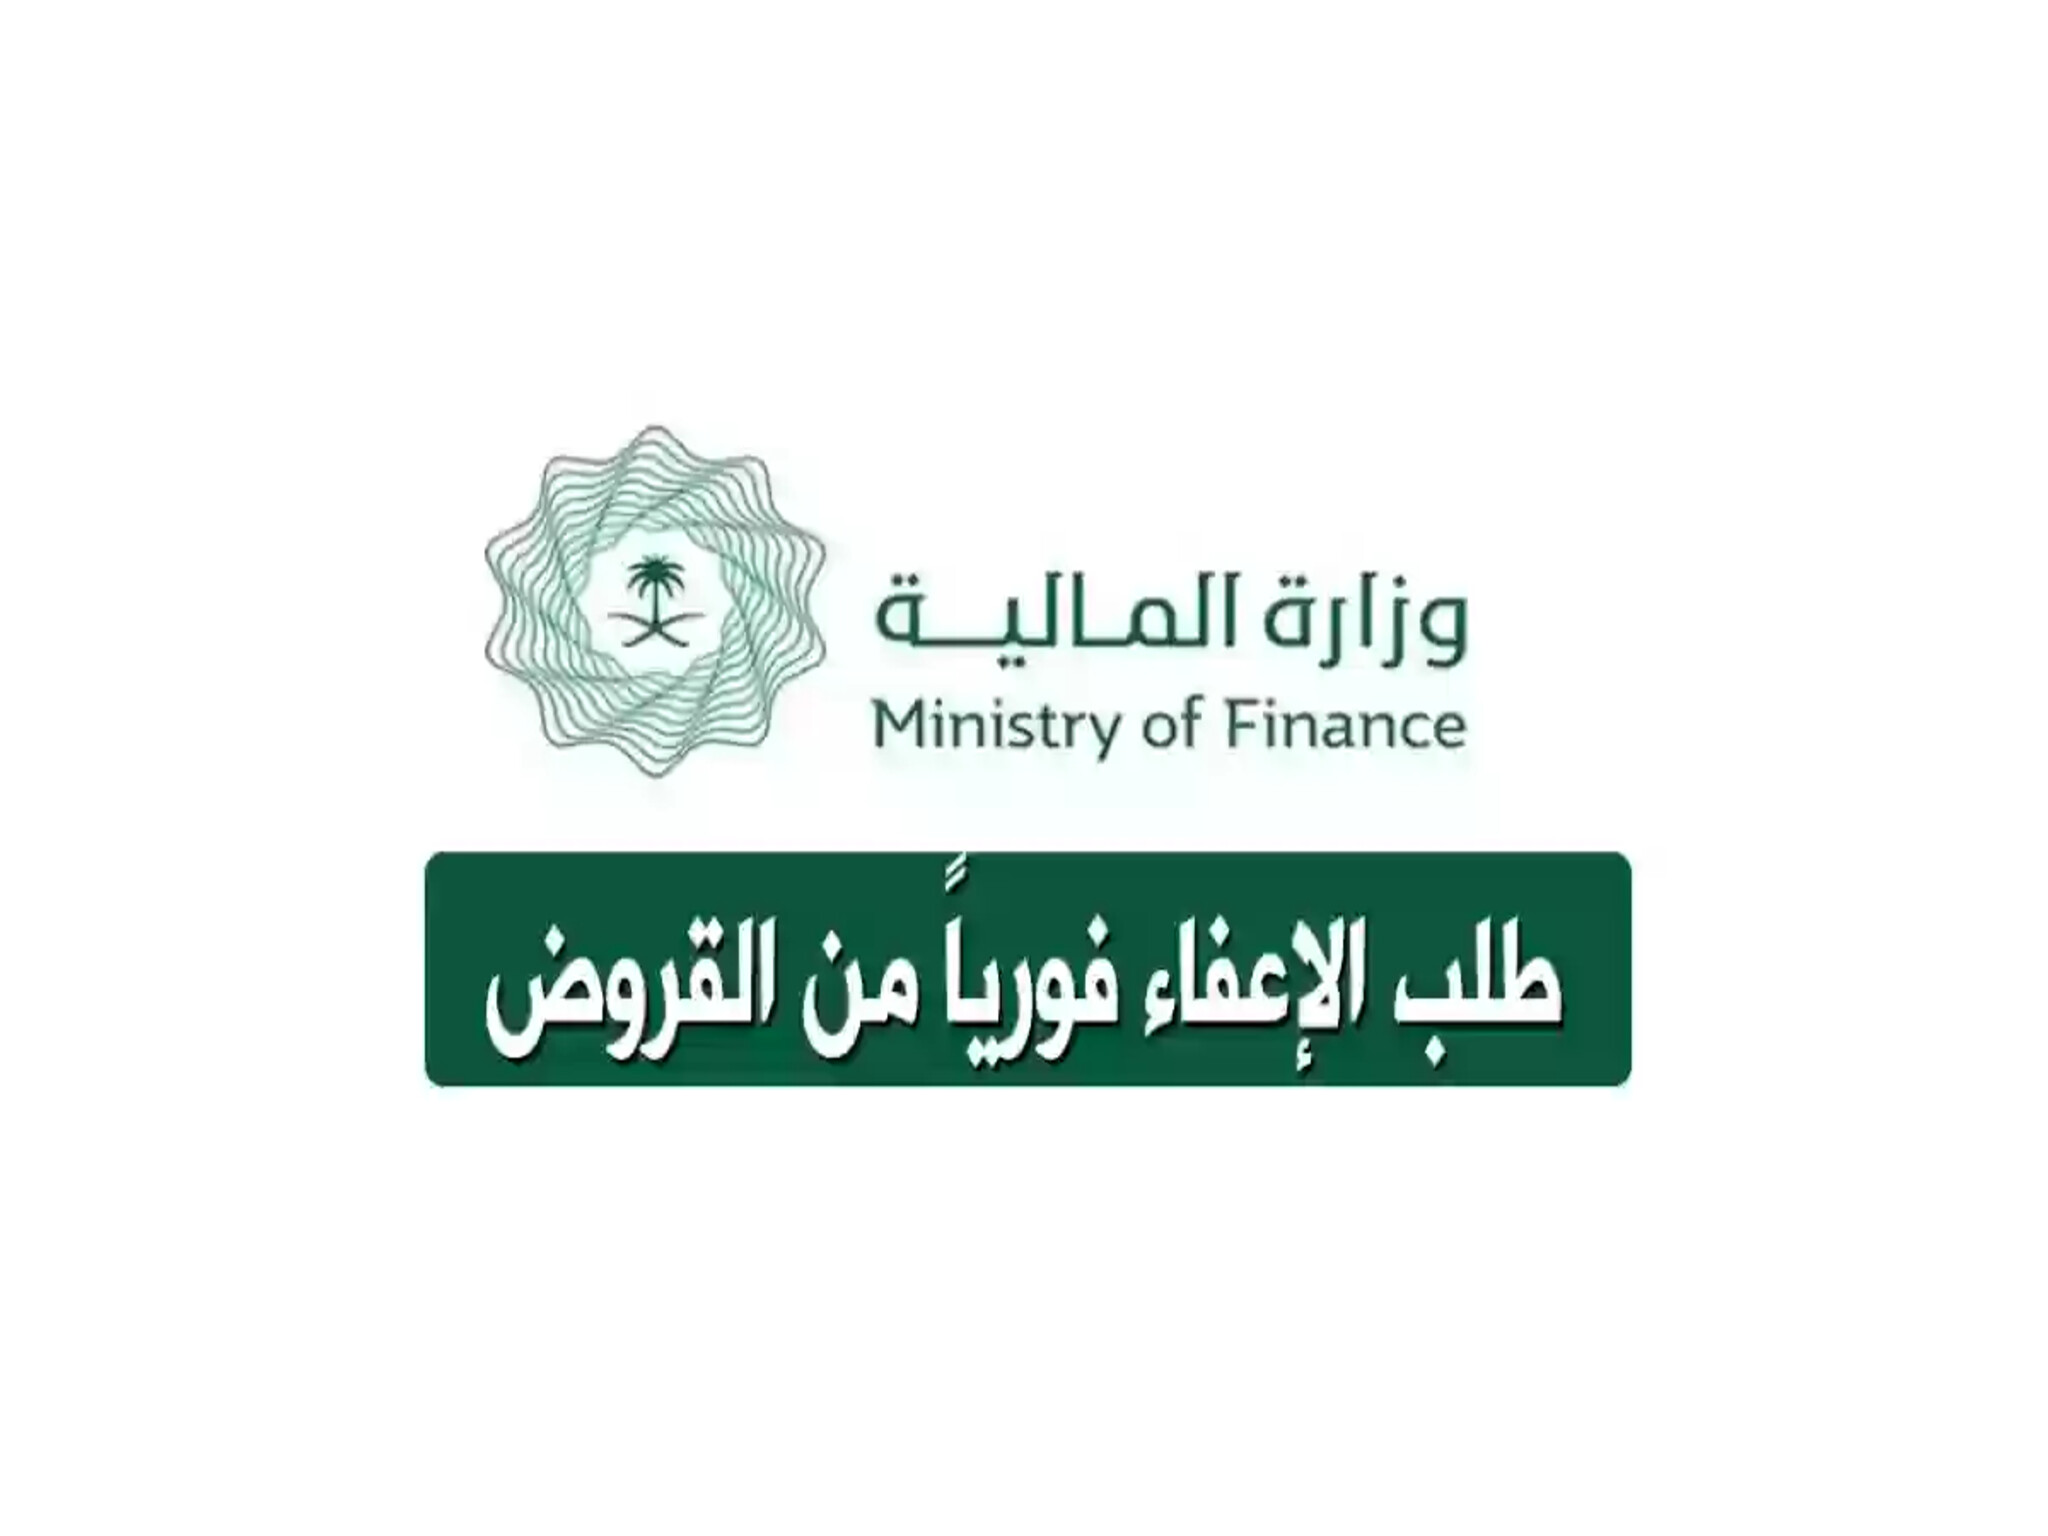 خطوات الاستعلام عن اعفاء قرض وزارة المالية بالمملكة السعودية 1445هـ